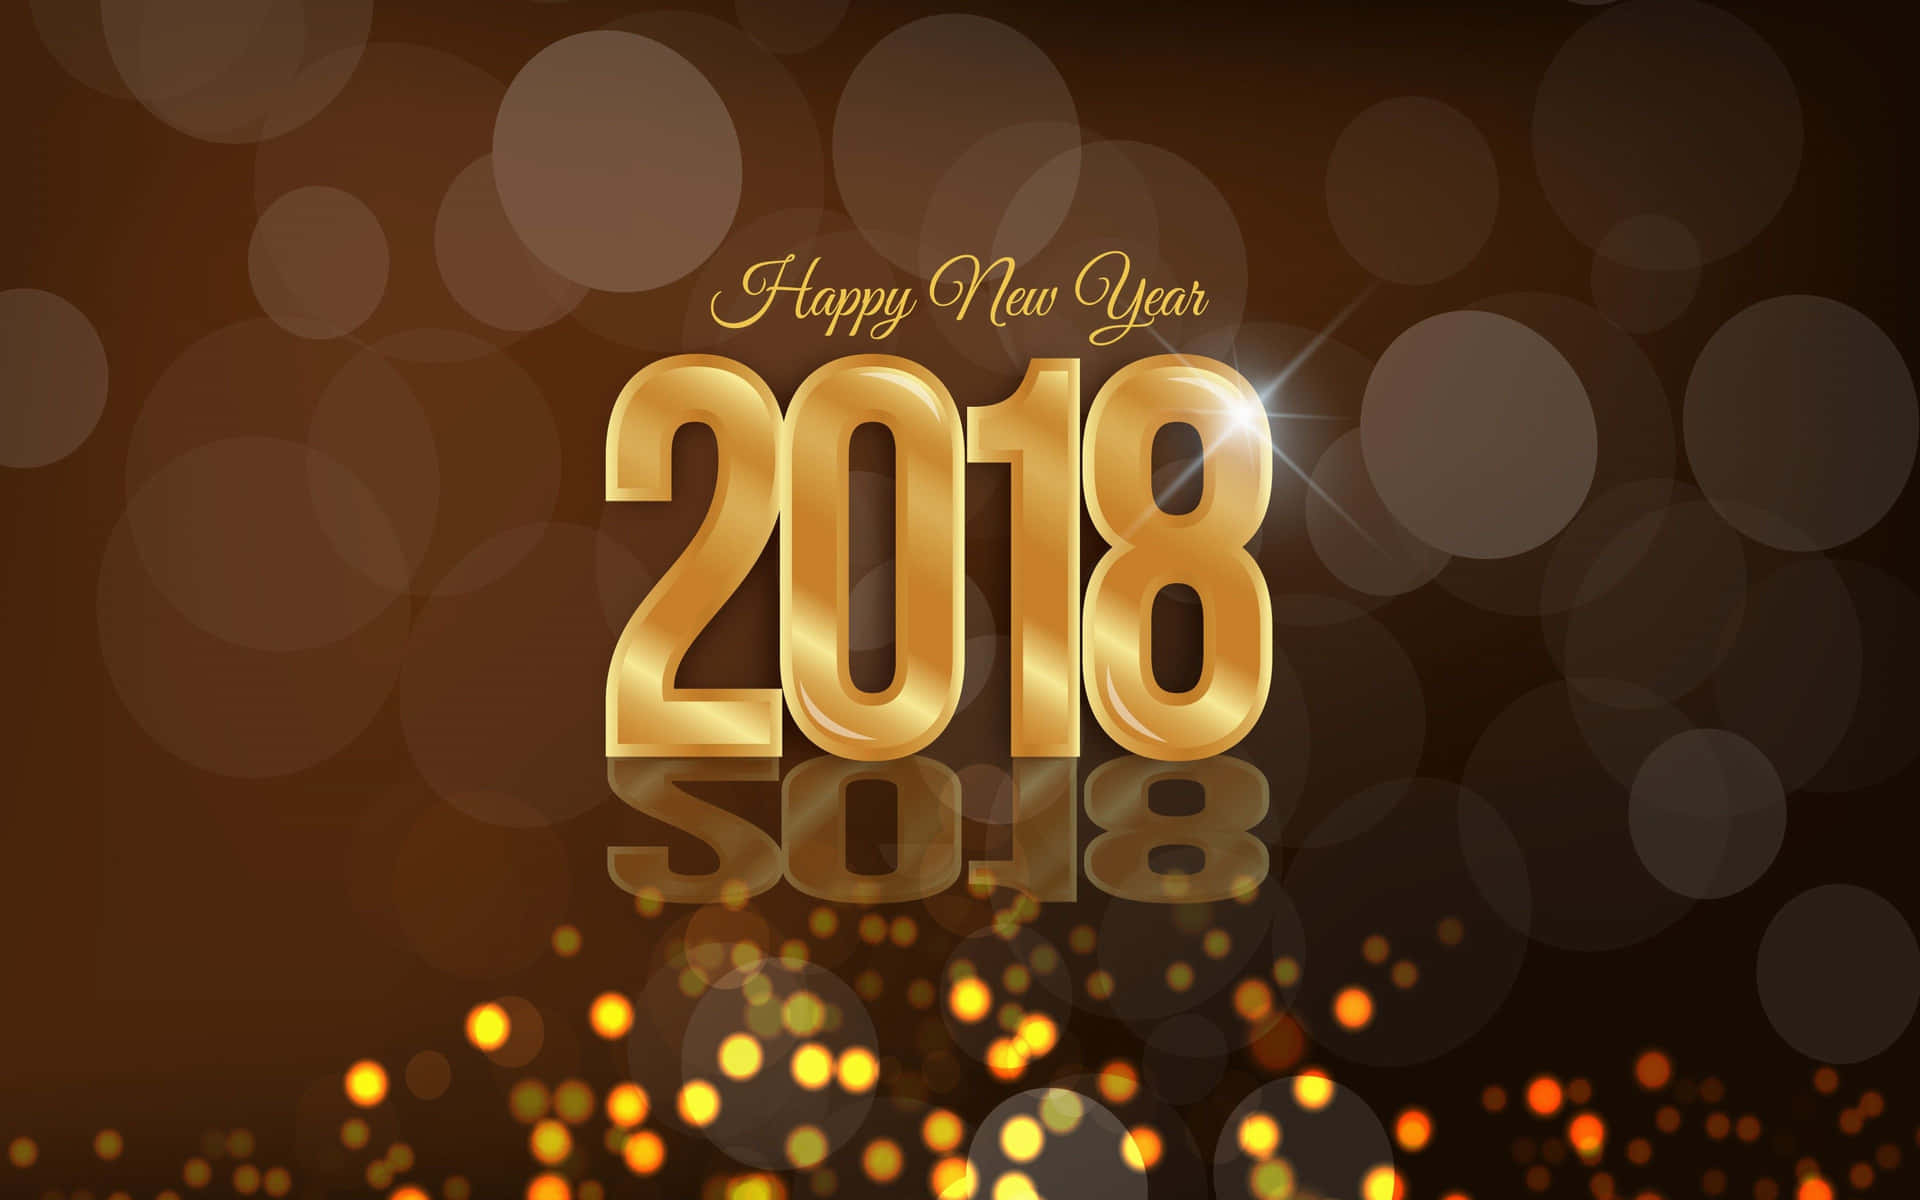 Felizaño Nuevo 2018 En Un Fondo Oscuro Con Letras Doradas